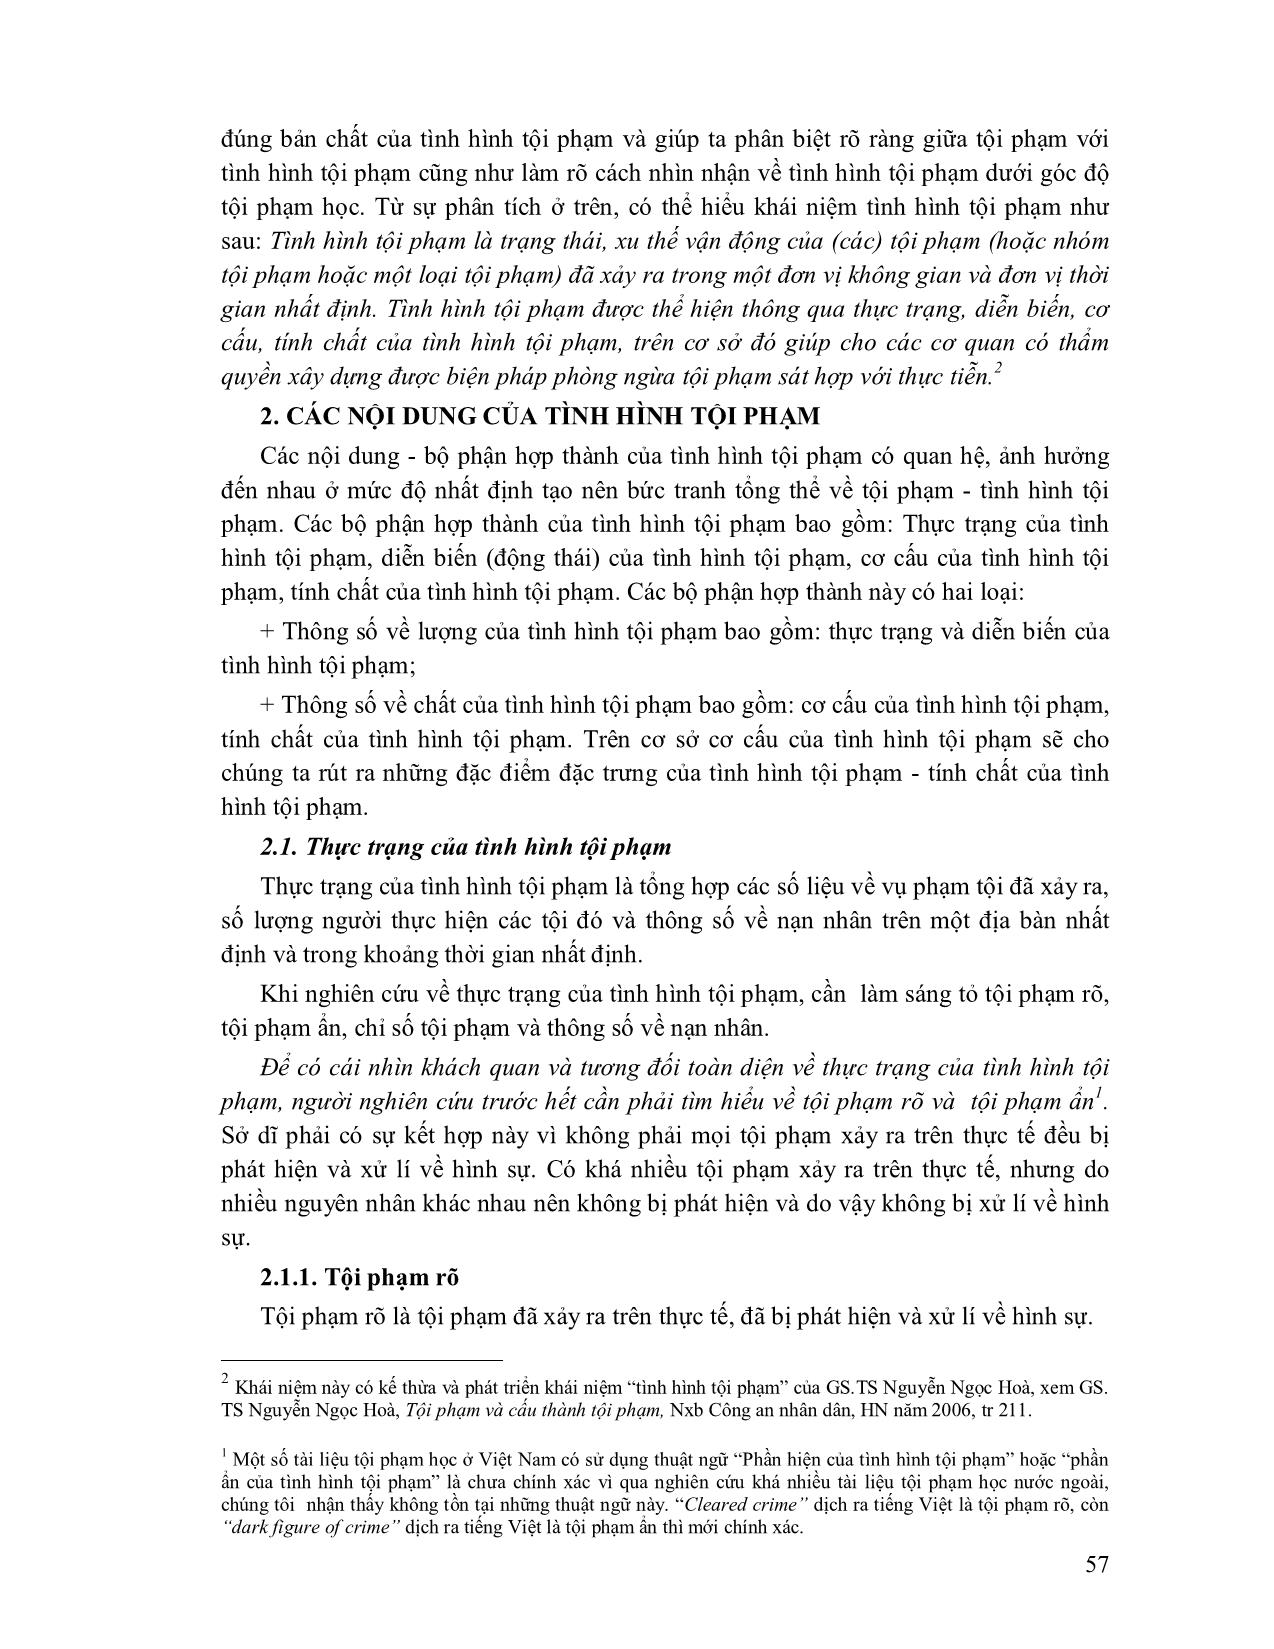 Giáo trình Tội phạm học (Phần 2) trang 2